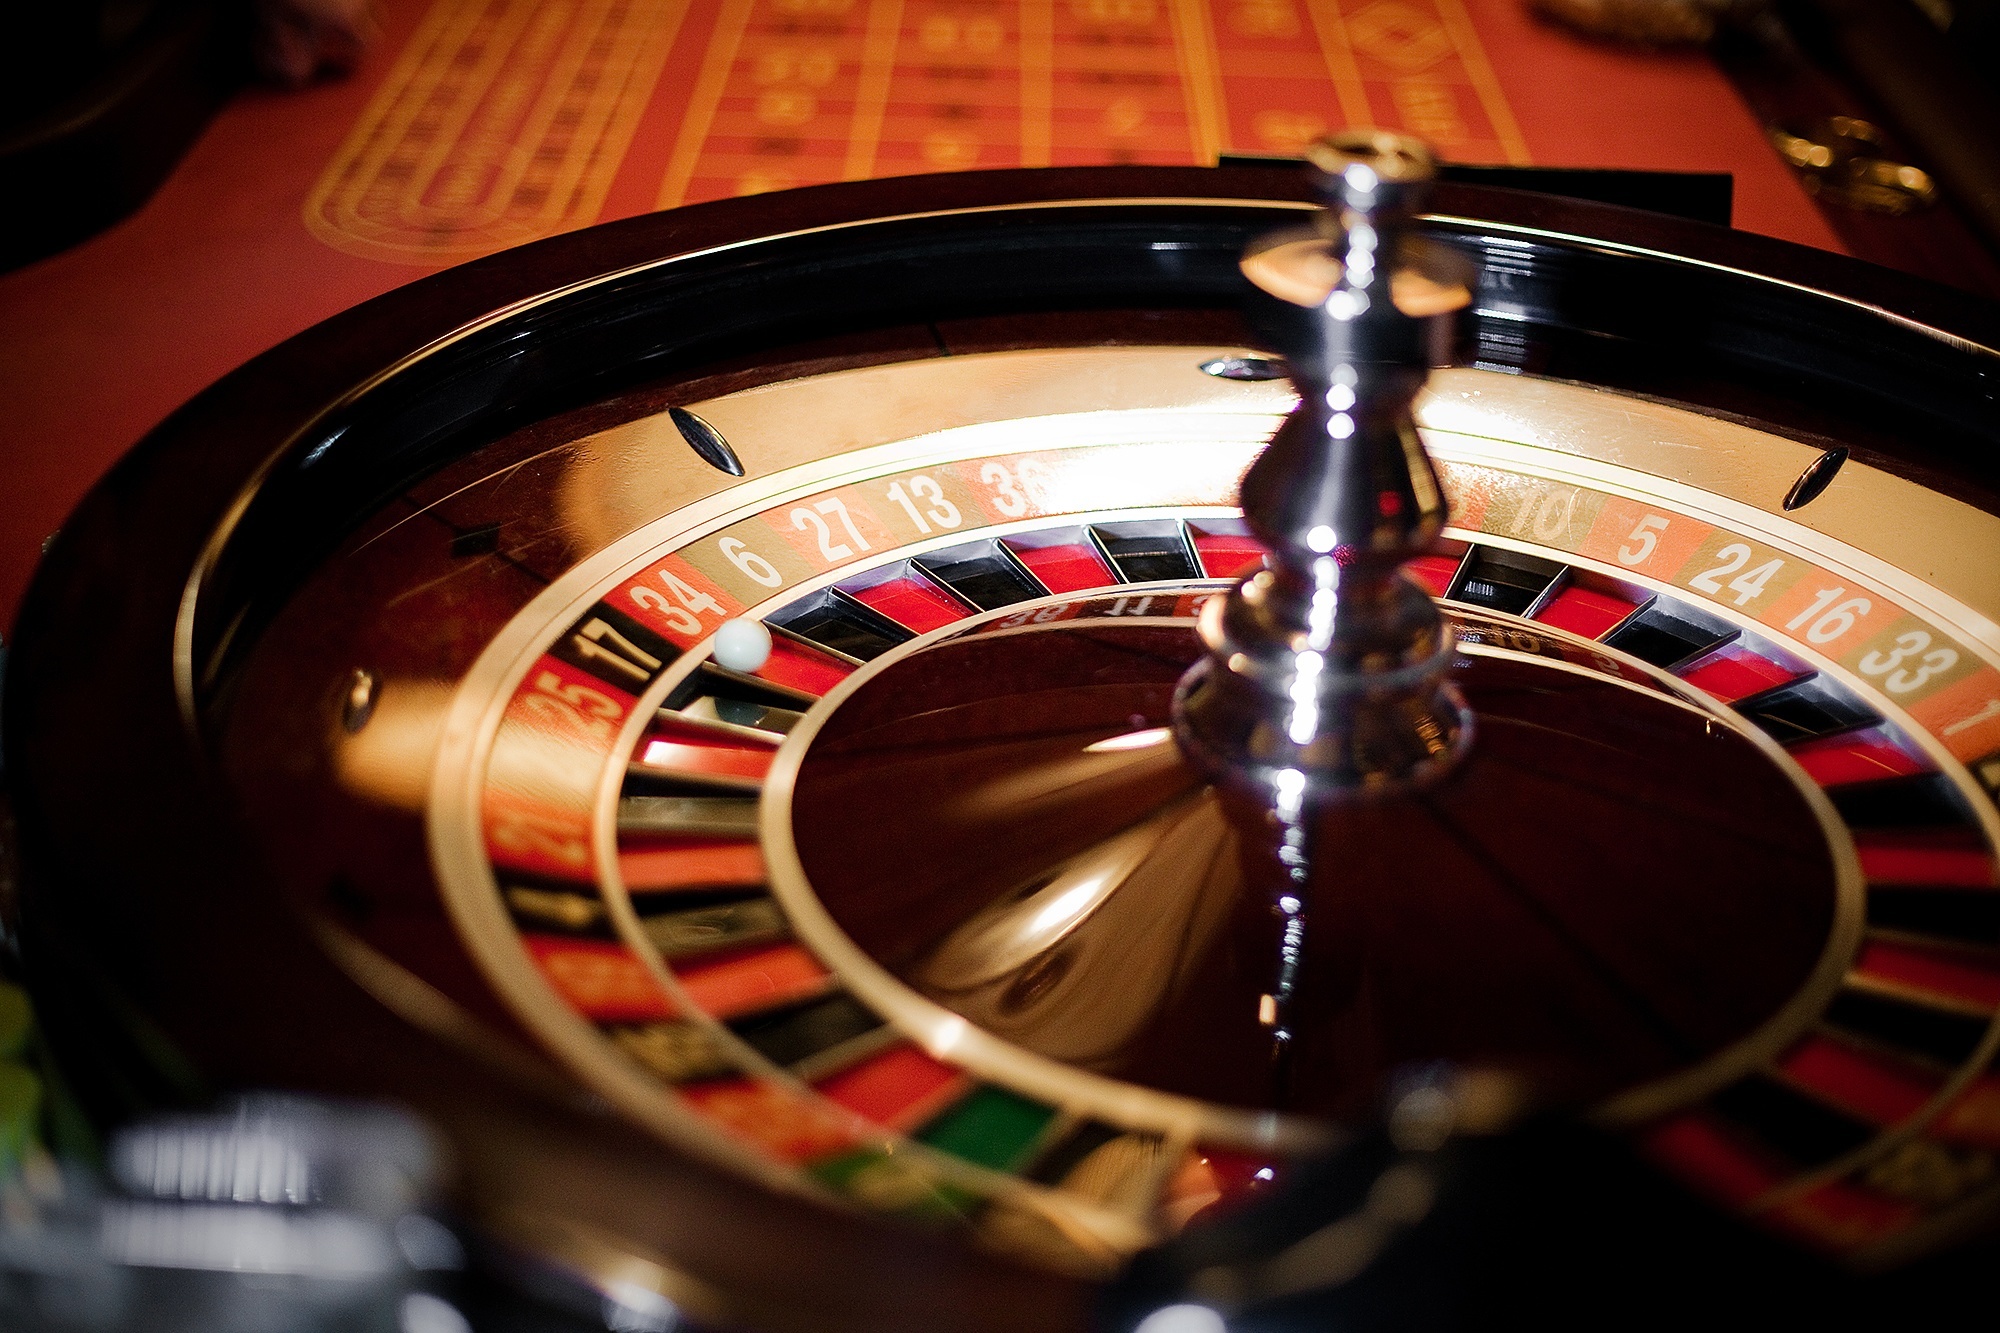 Maquinas tragamonedas gratis casino